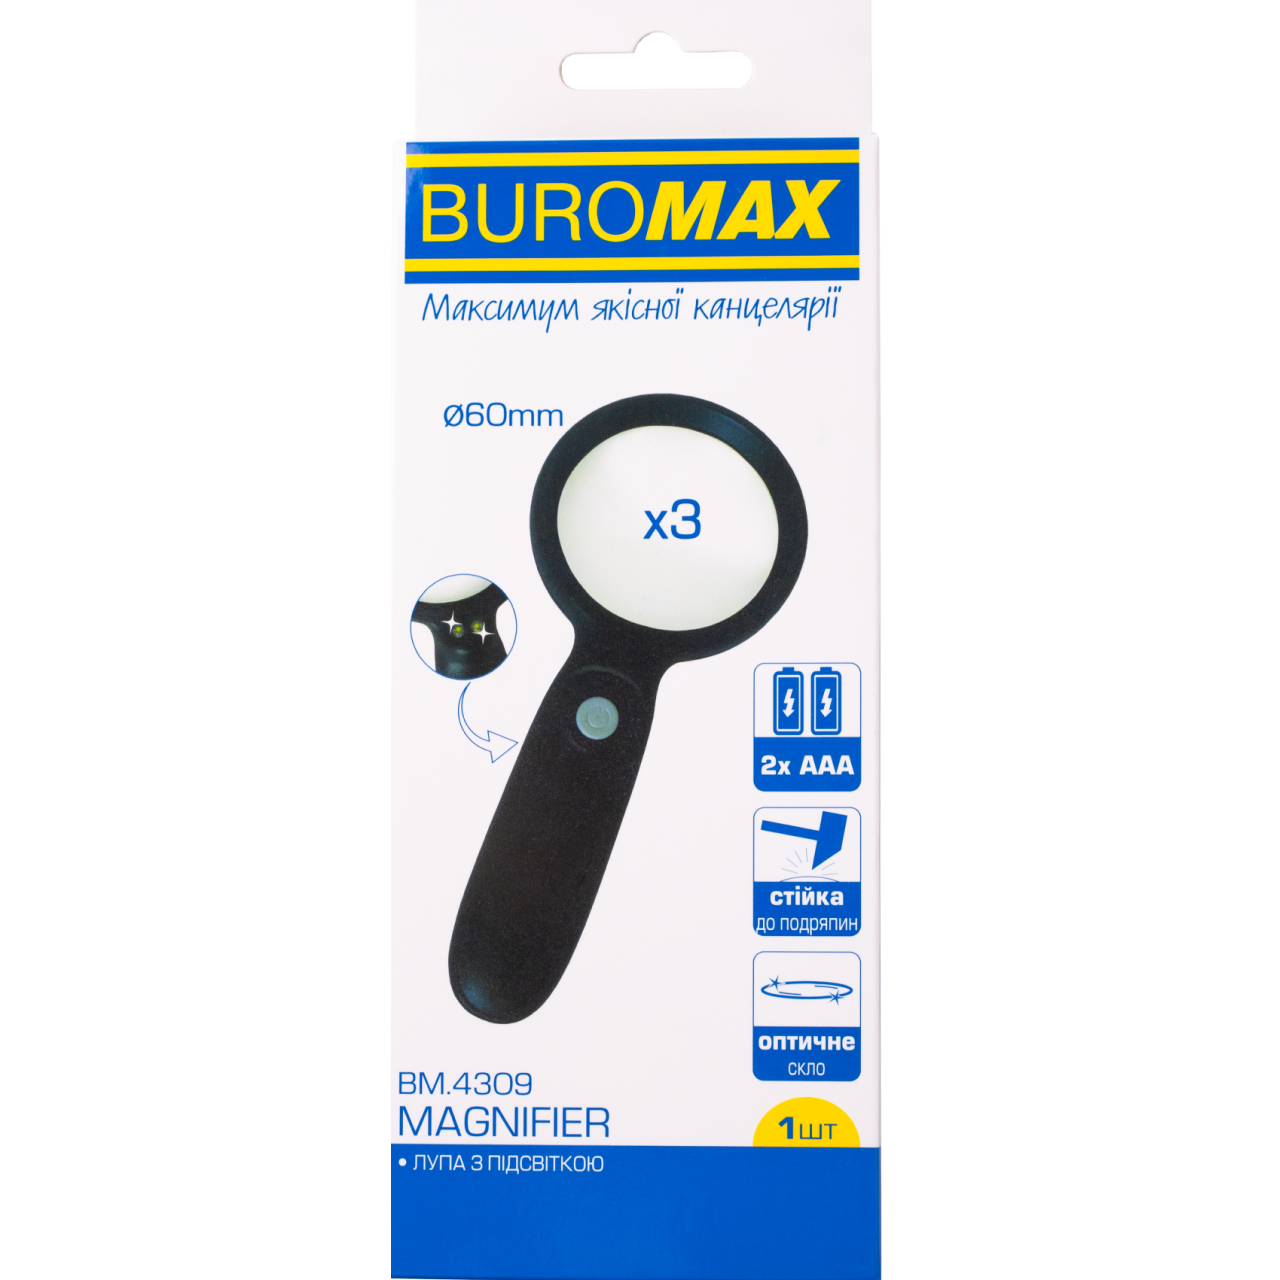 Лупа з ручкою BuroMax d 60 кратність х 3 з підсвічуванням